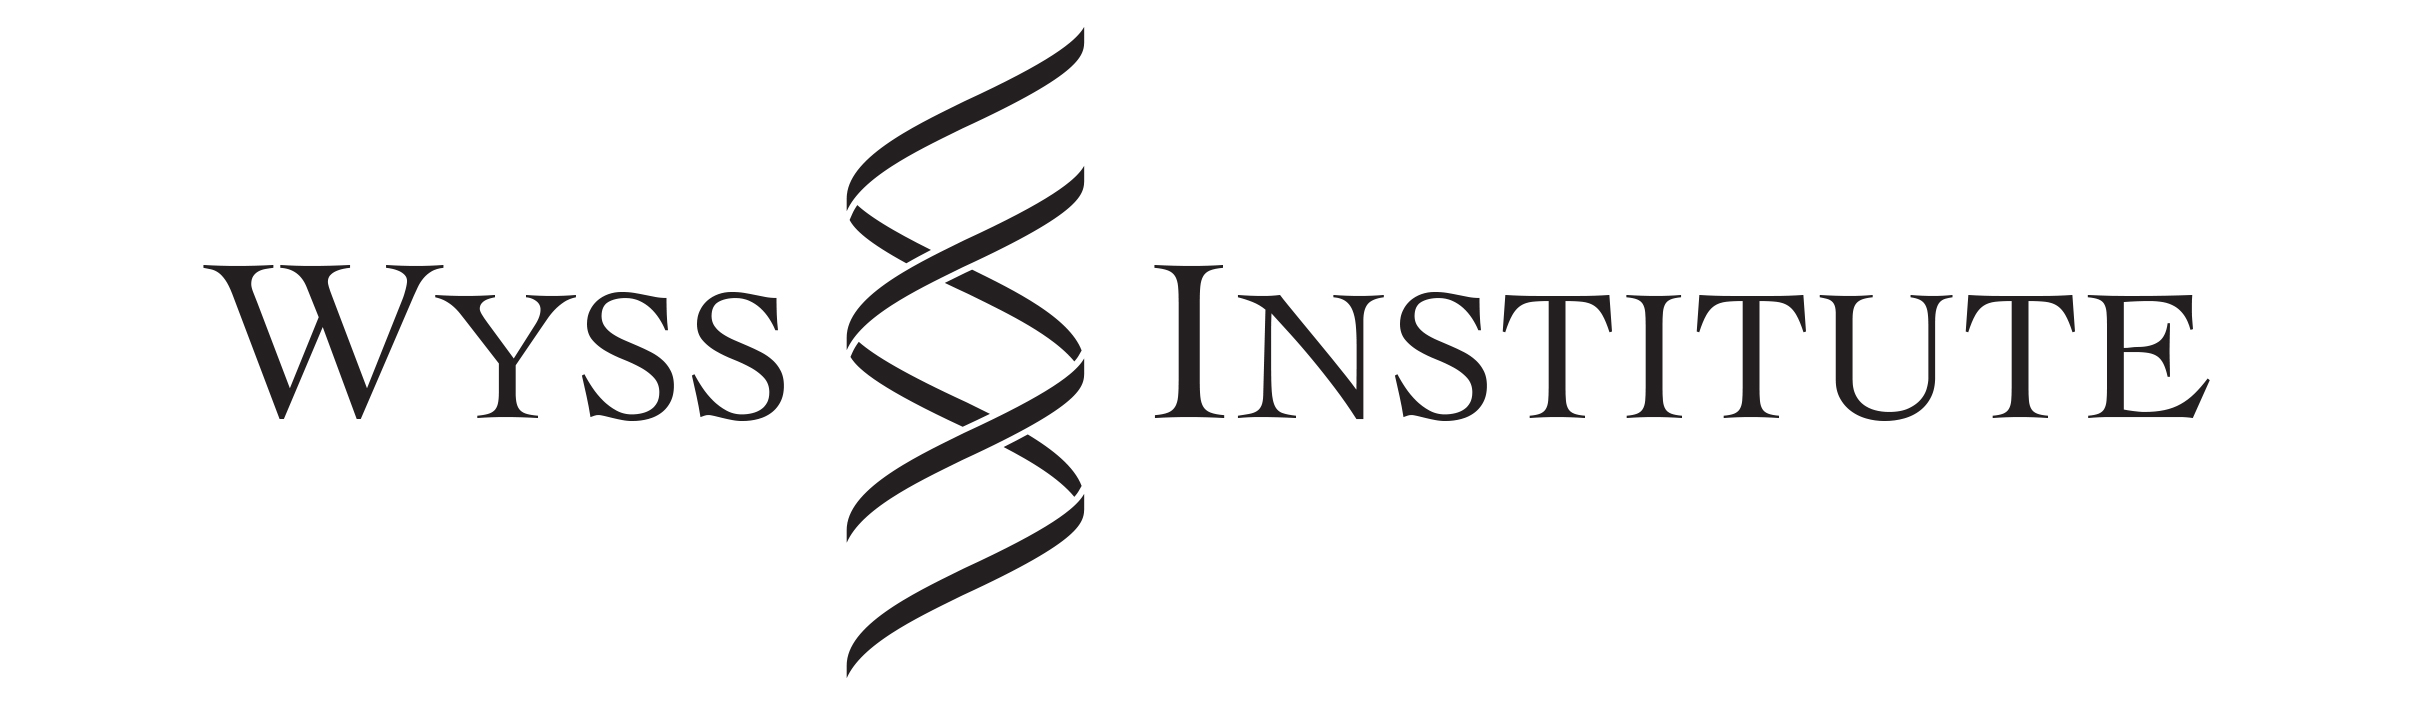 Wyss Institute logo